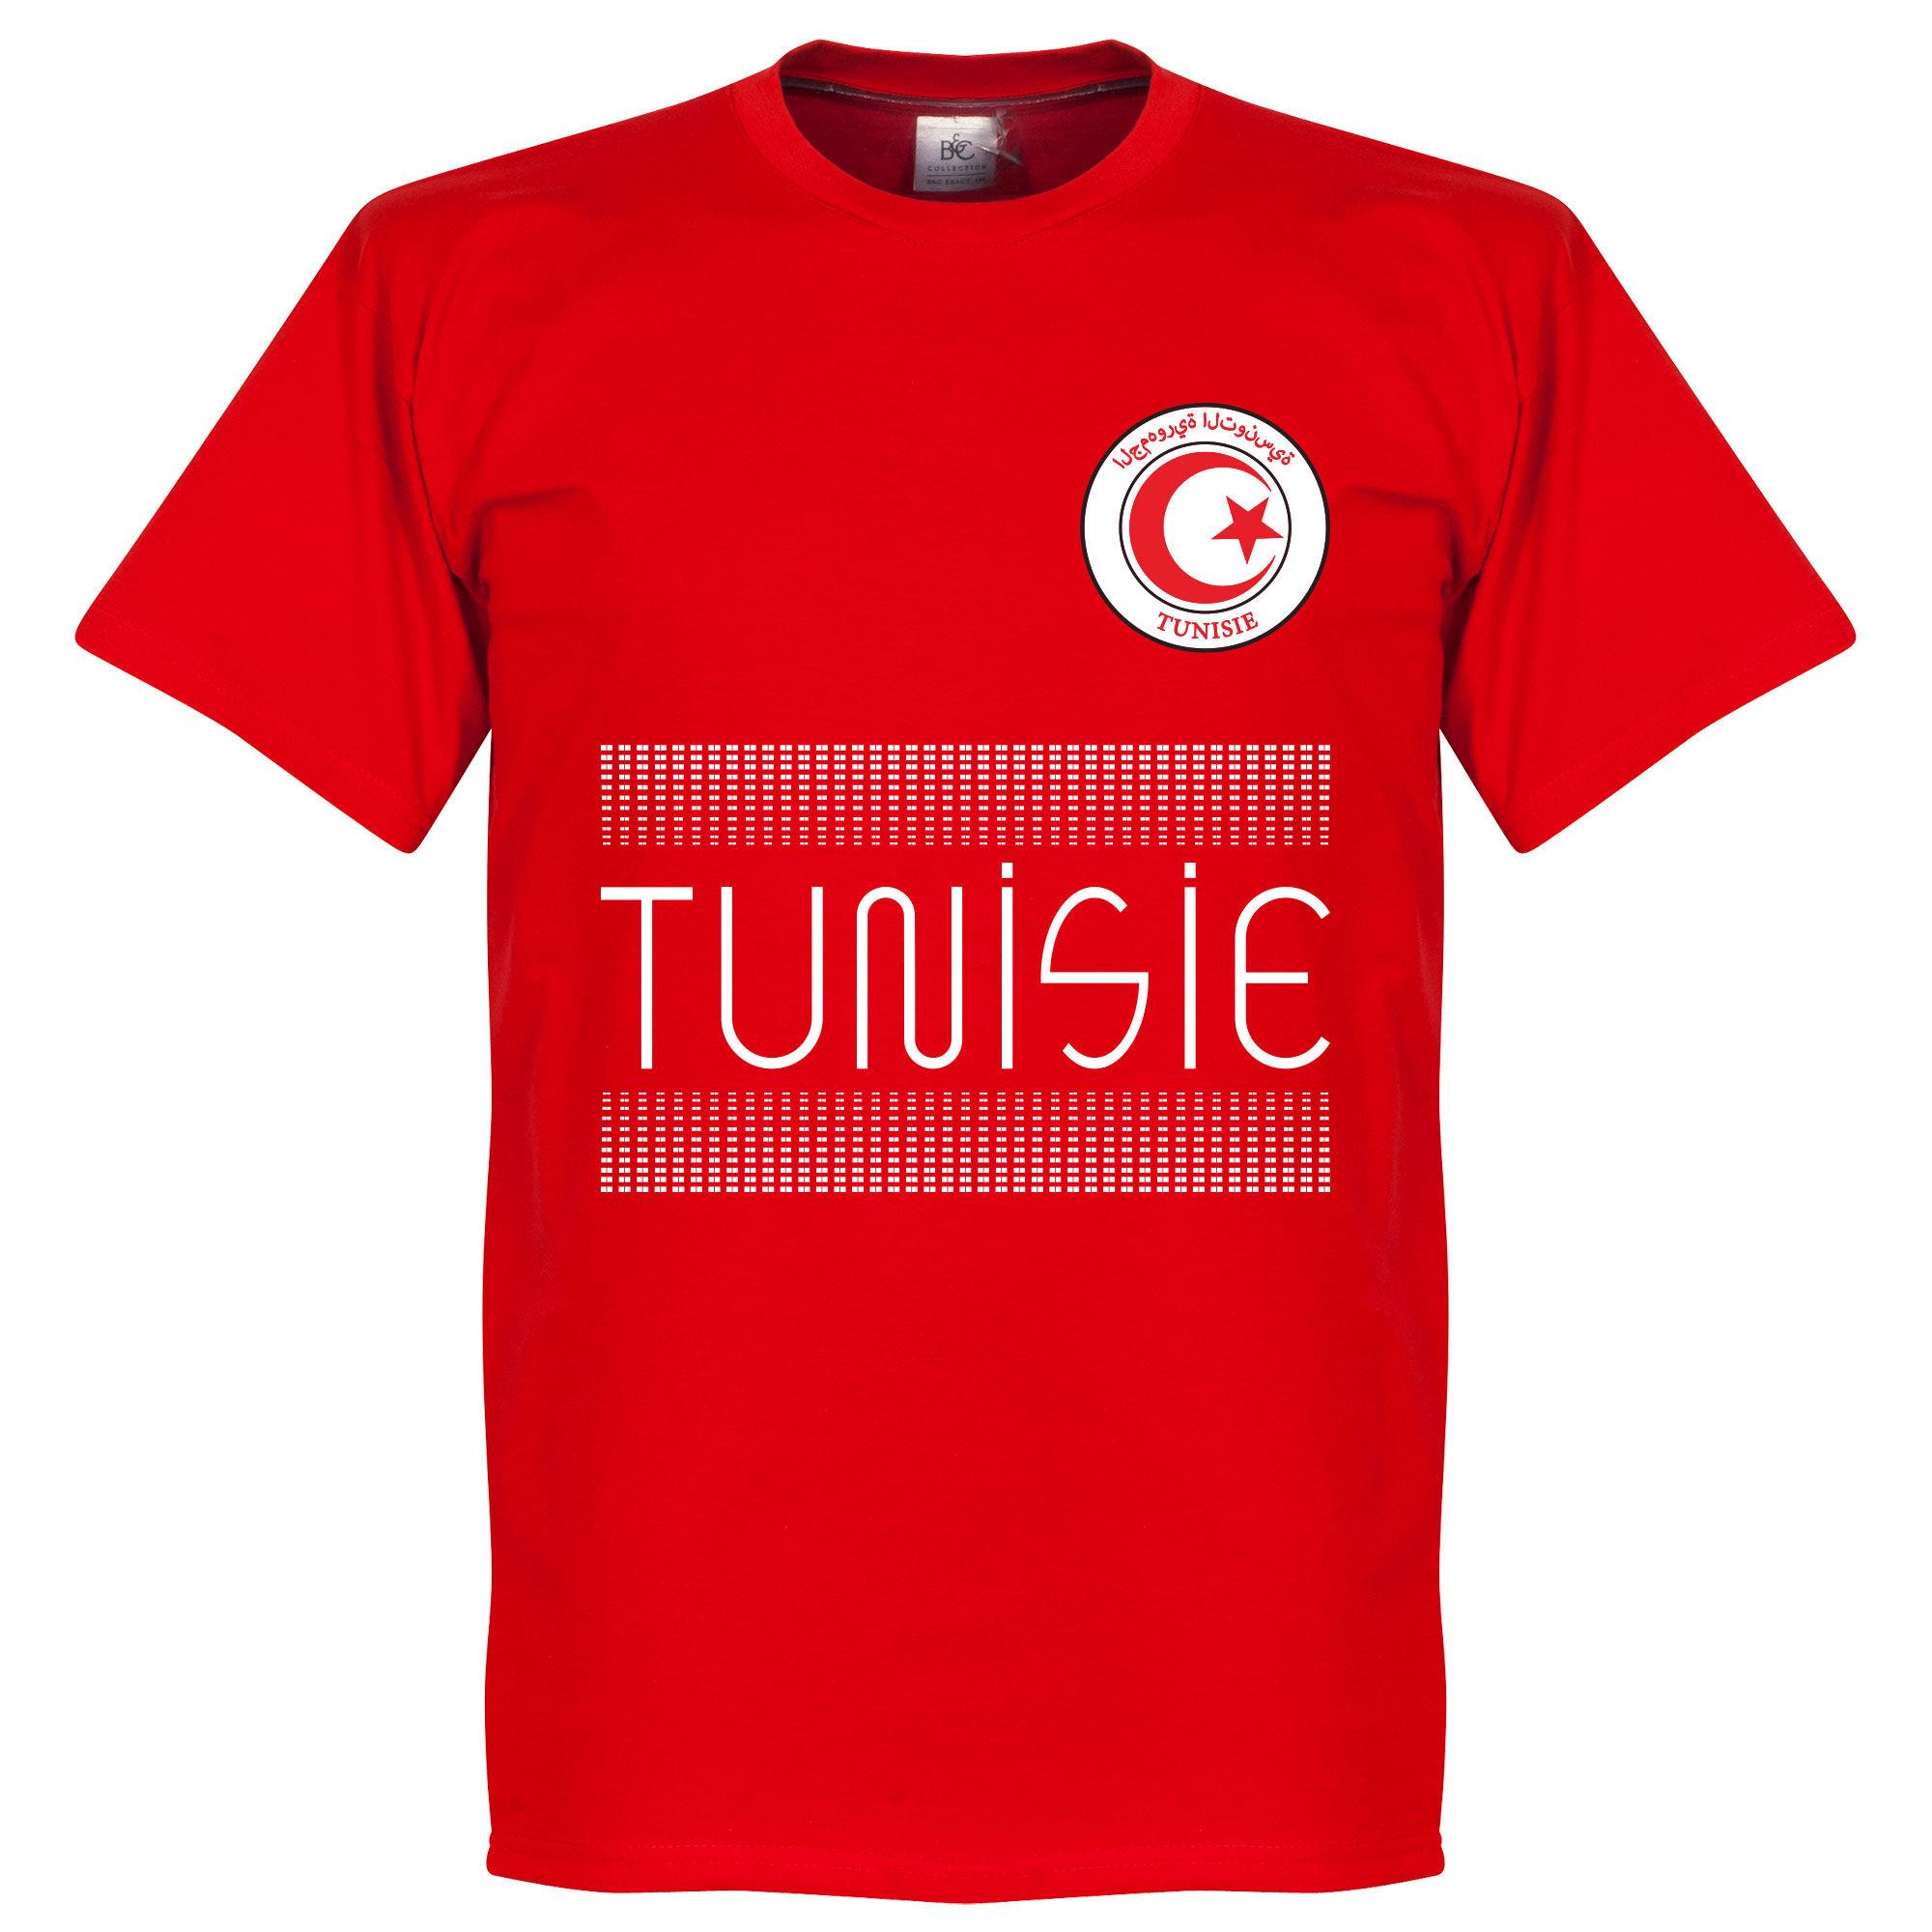 Tunisko - Tričko - červené